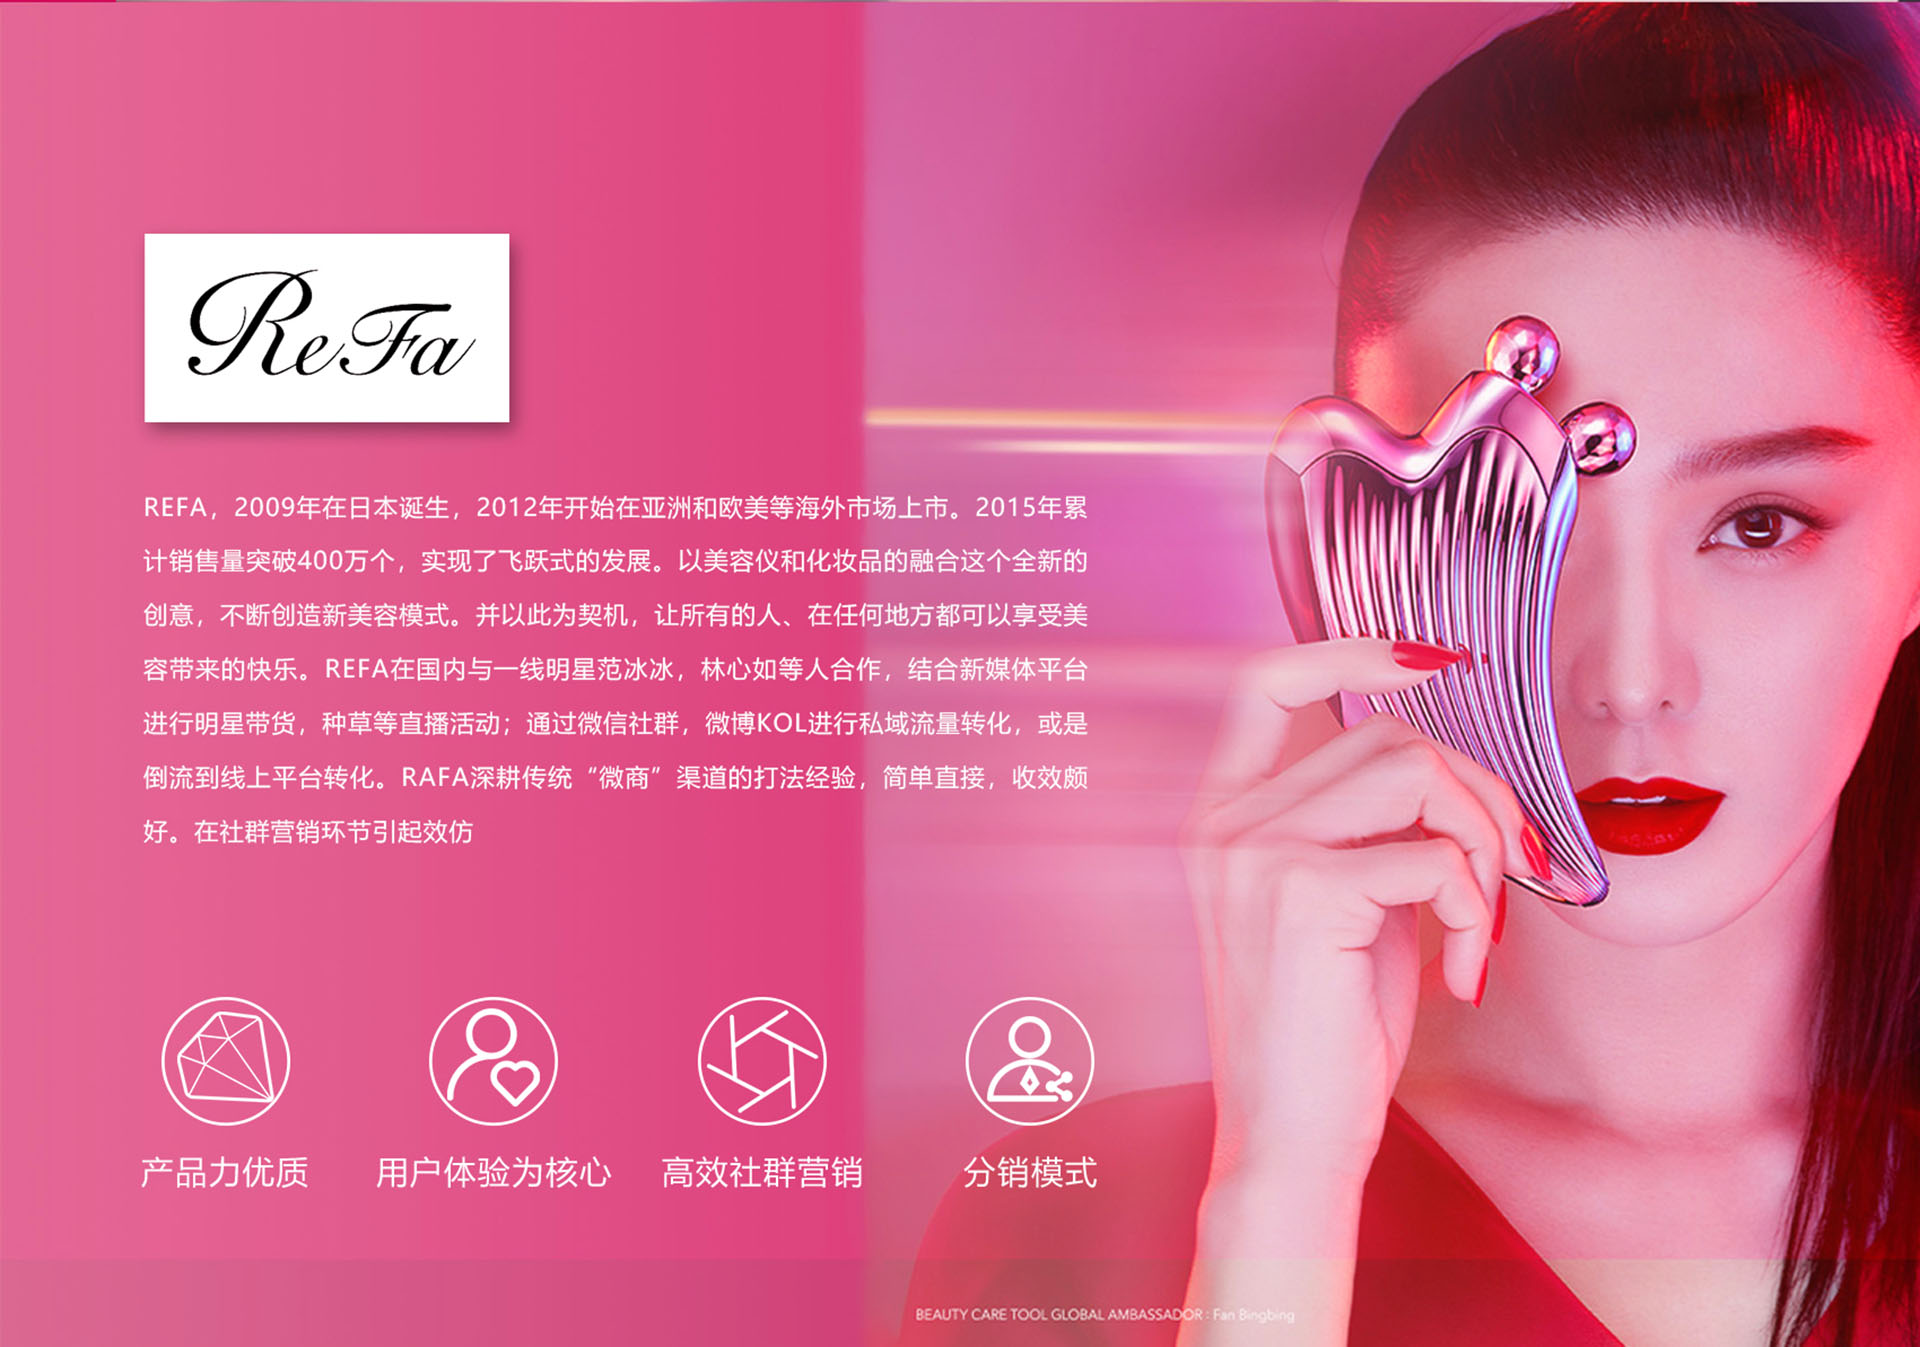 美容品牌策划设计-OREO甜甜圈智能面膜